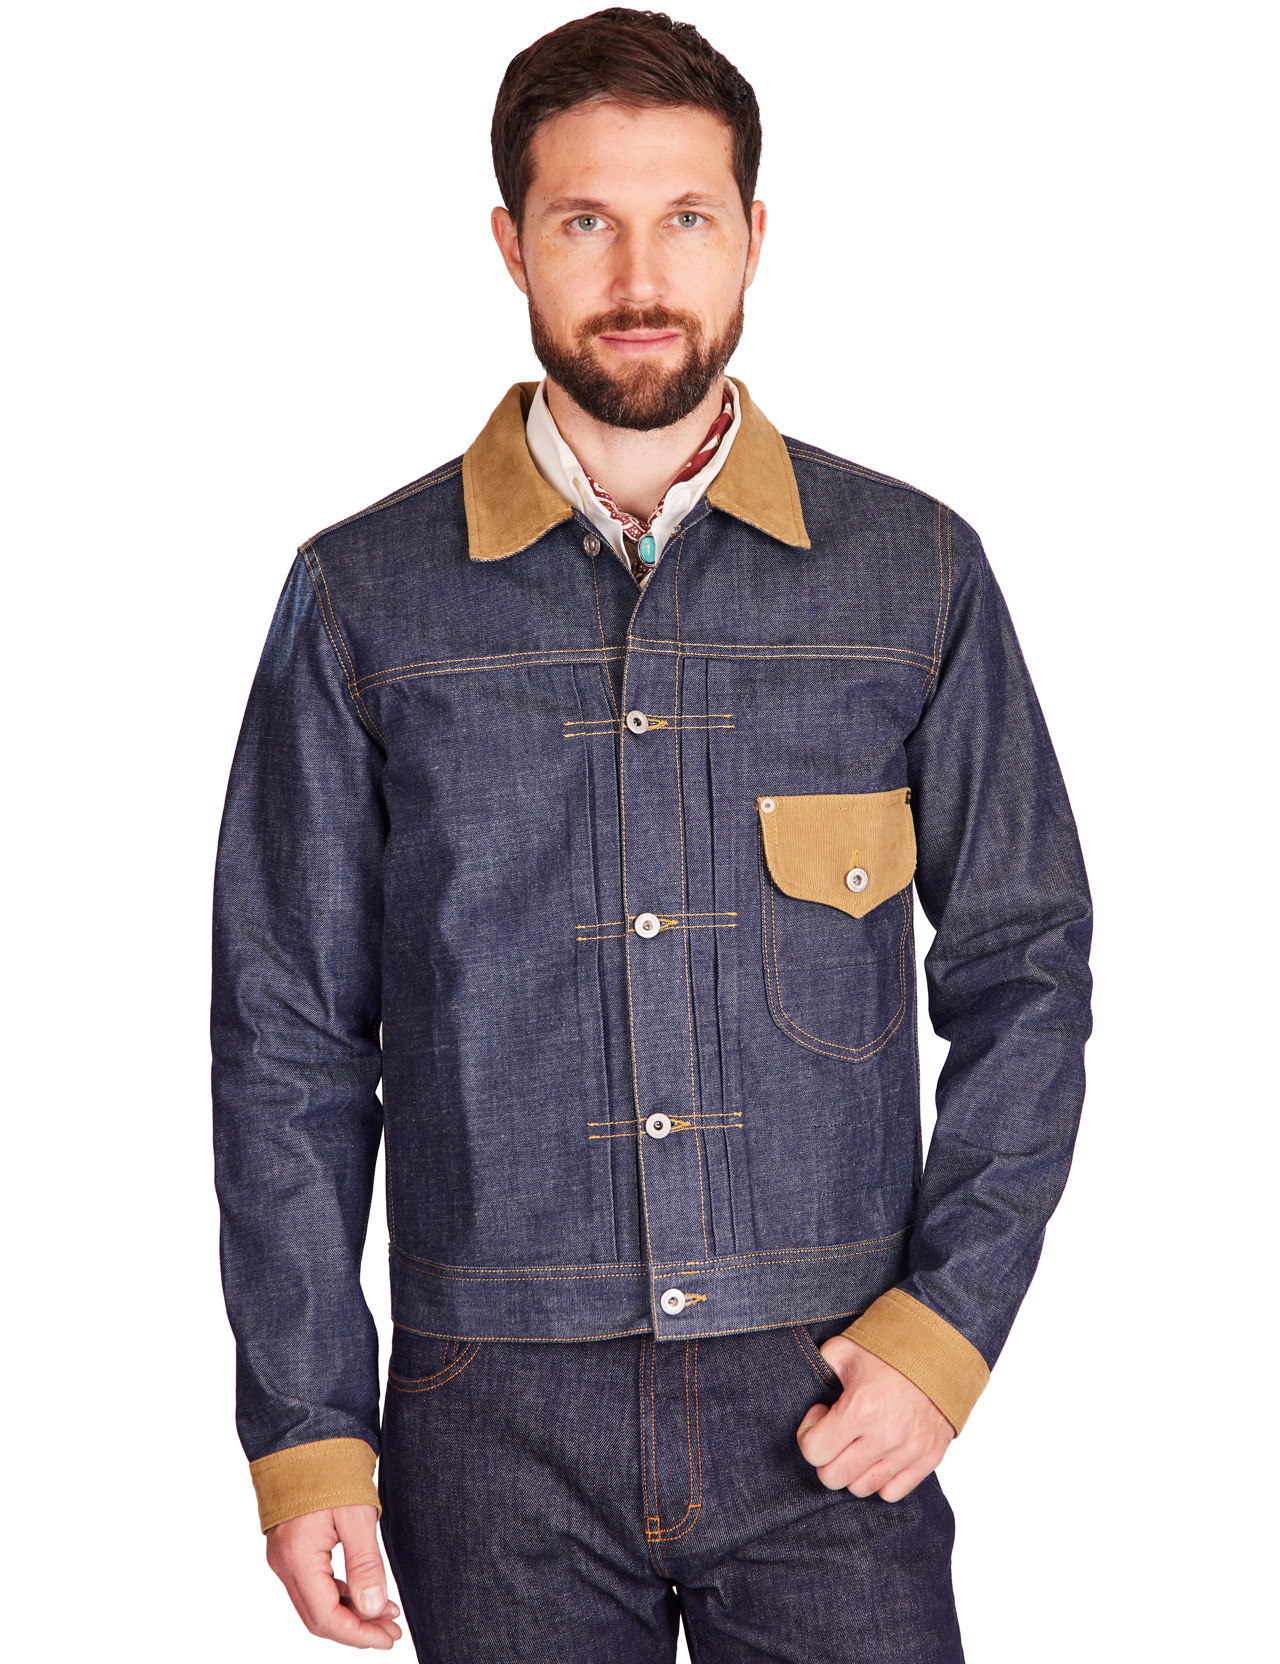 Blue Blanket - Ranch Wear Cowboy Jeans Jacket